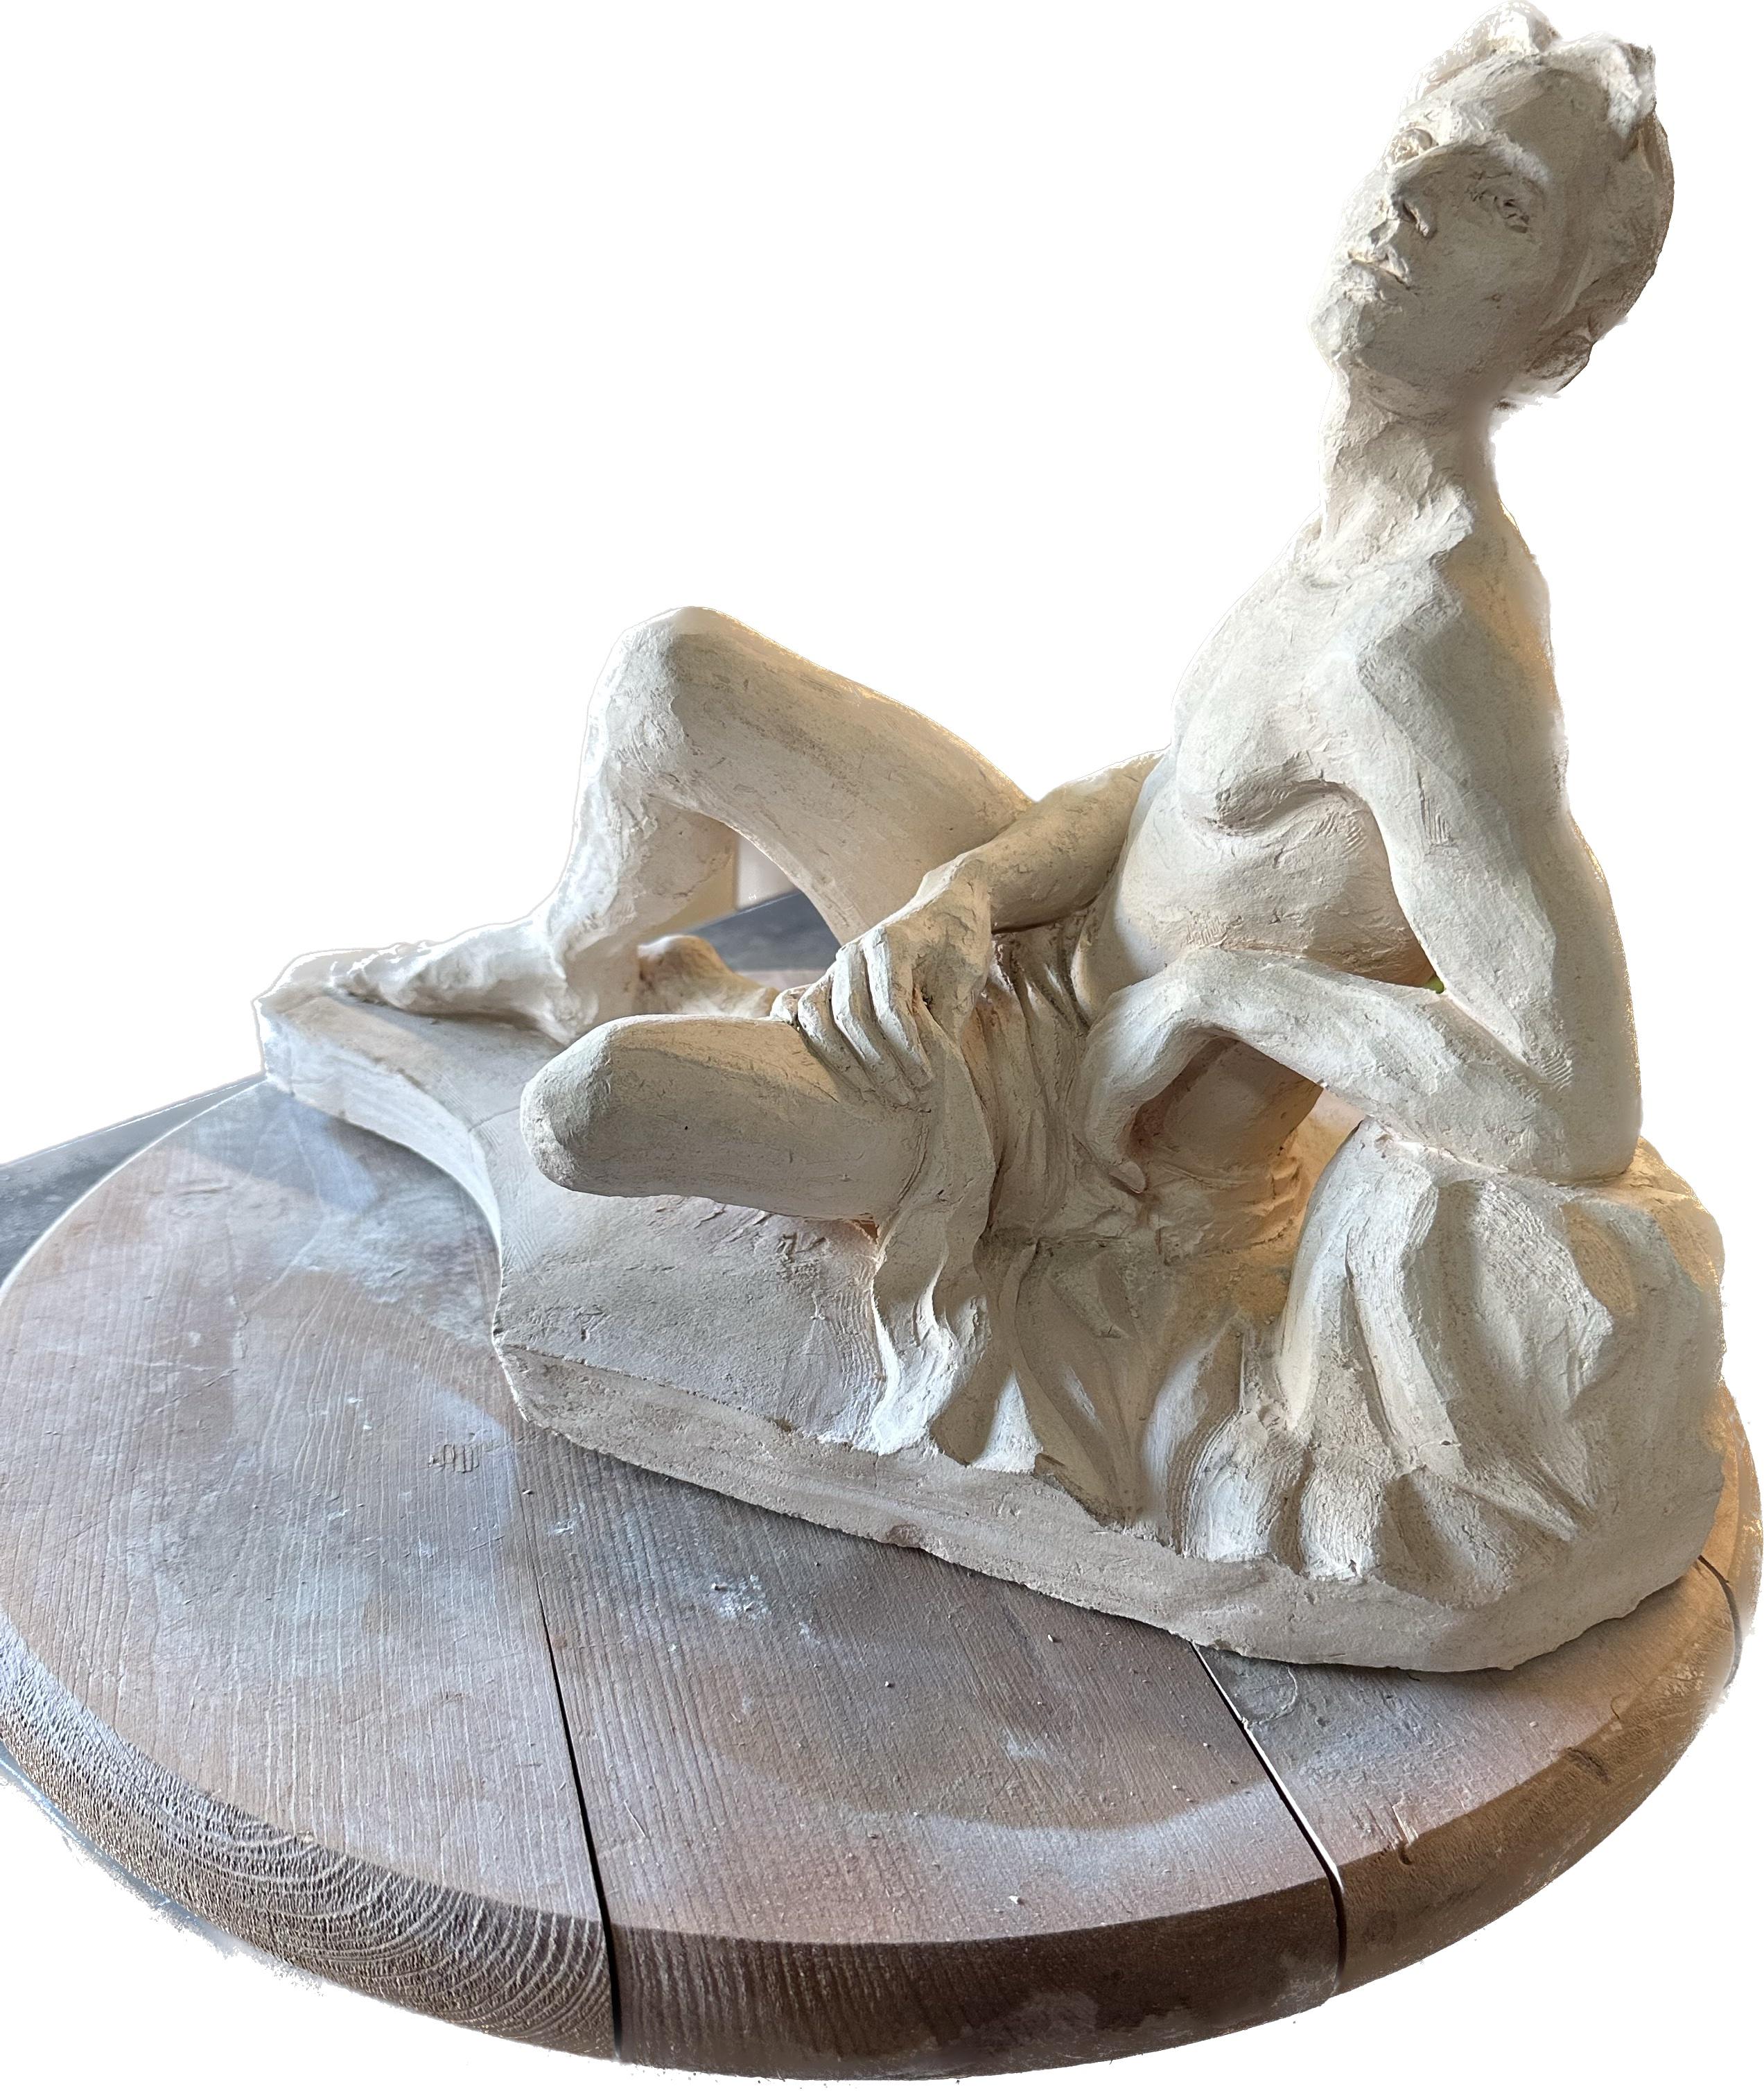 Der Denker, Skulptur, handgefertigt, Keramik von Garo Einzigartig – Sculpture von Karapet Balakeseryan  (Garo)